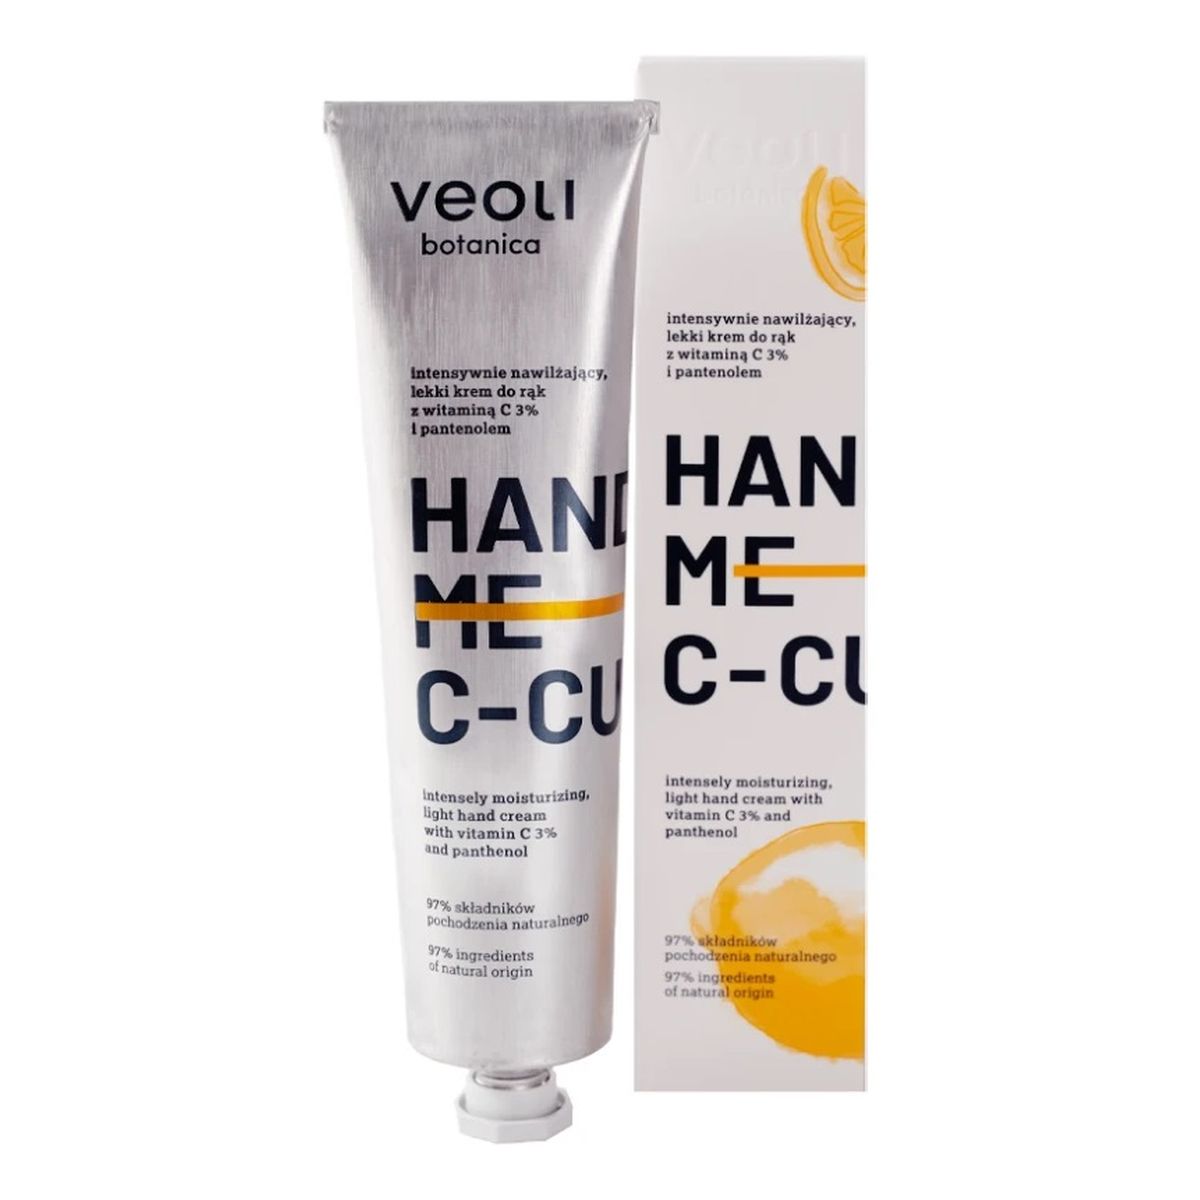 Veoli Botanica Hand Me C-Cure intensywnie nawilżający lekki Krem do rąk z witaminą c 3% i pantenolem 75ml